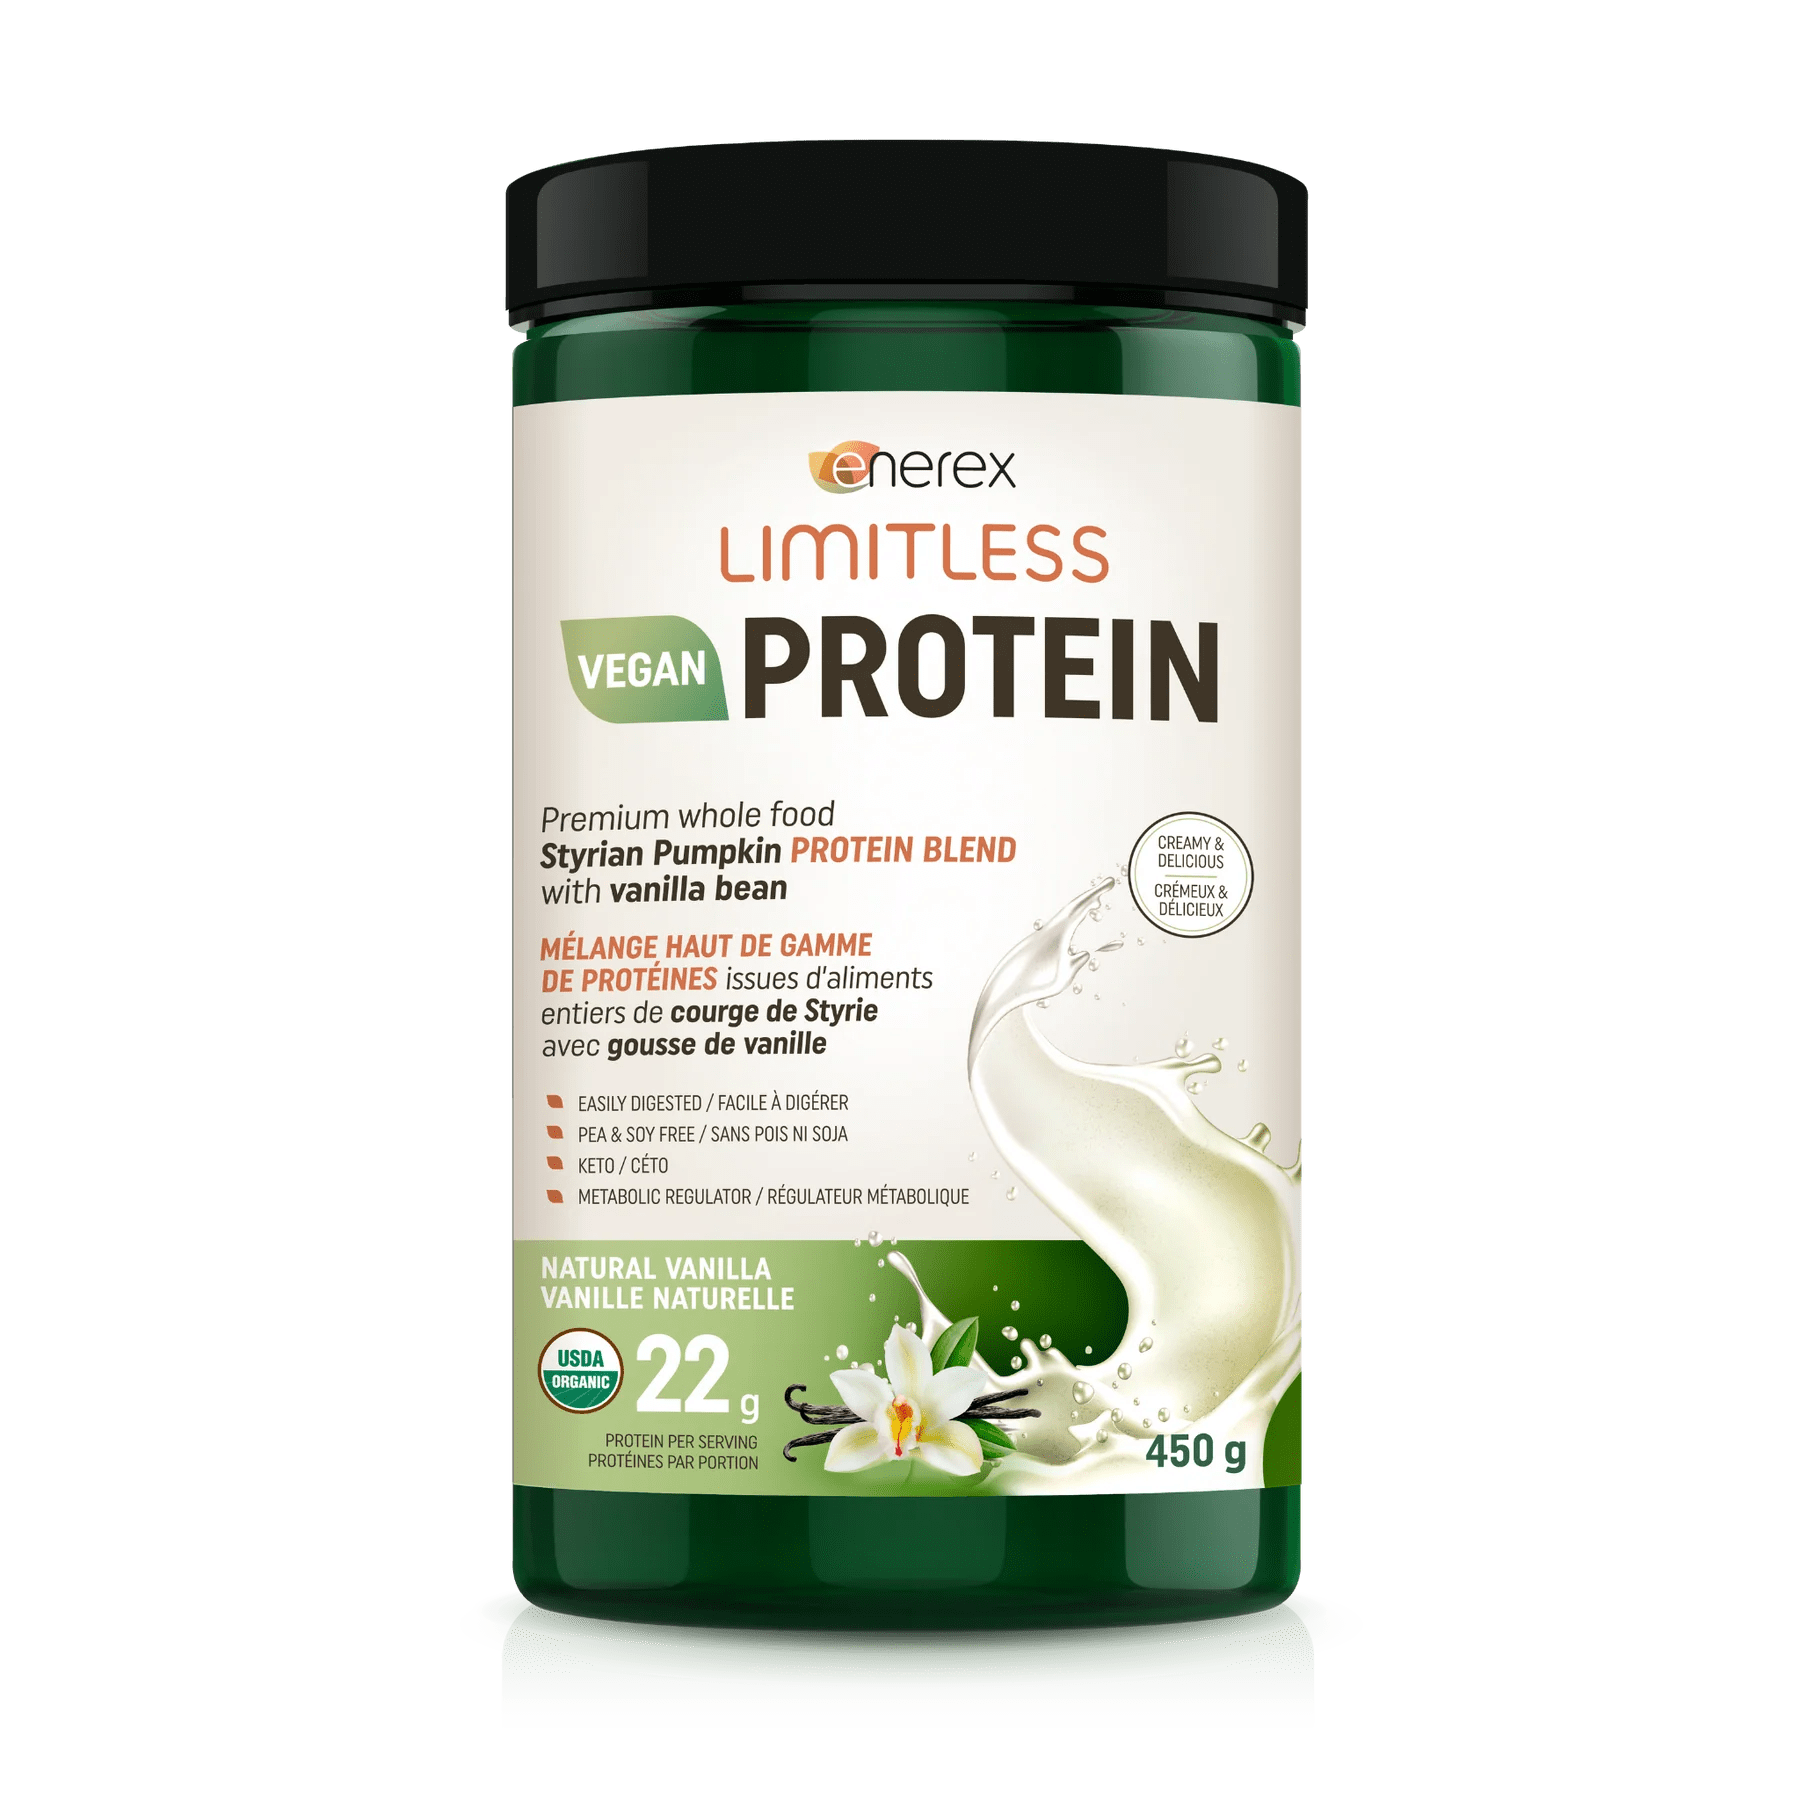 ENEREX Suppléments Limitless protéine bio (vanille naturelle) 450g
DATE DE PÉREMPTION : 30 JUIN 2025